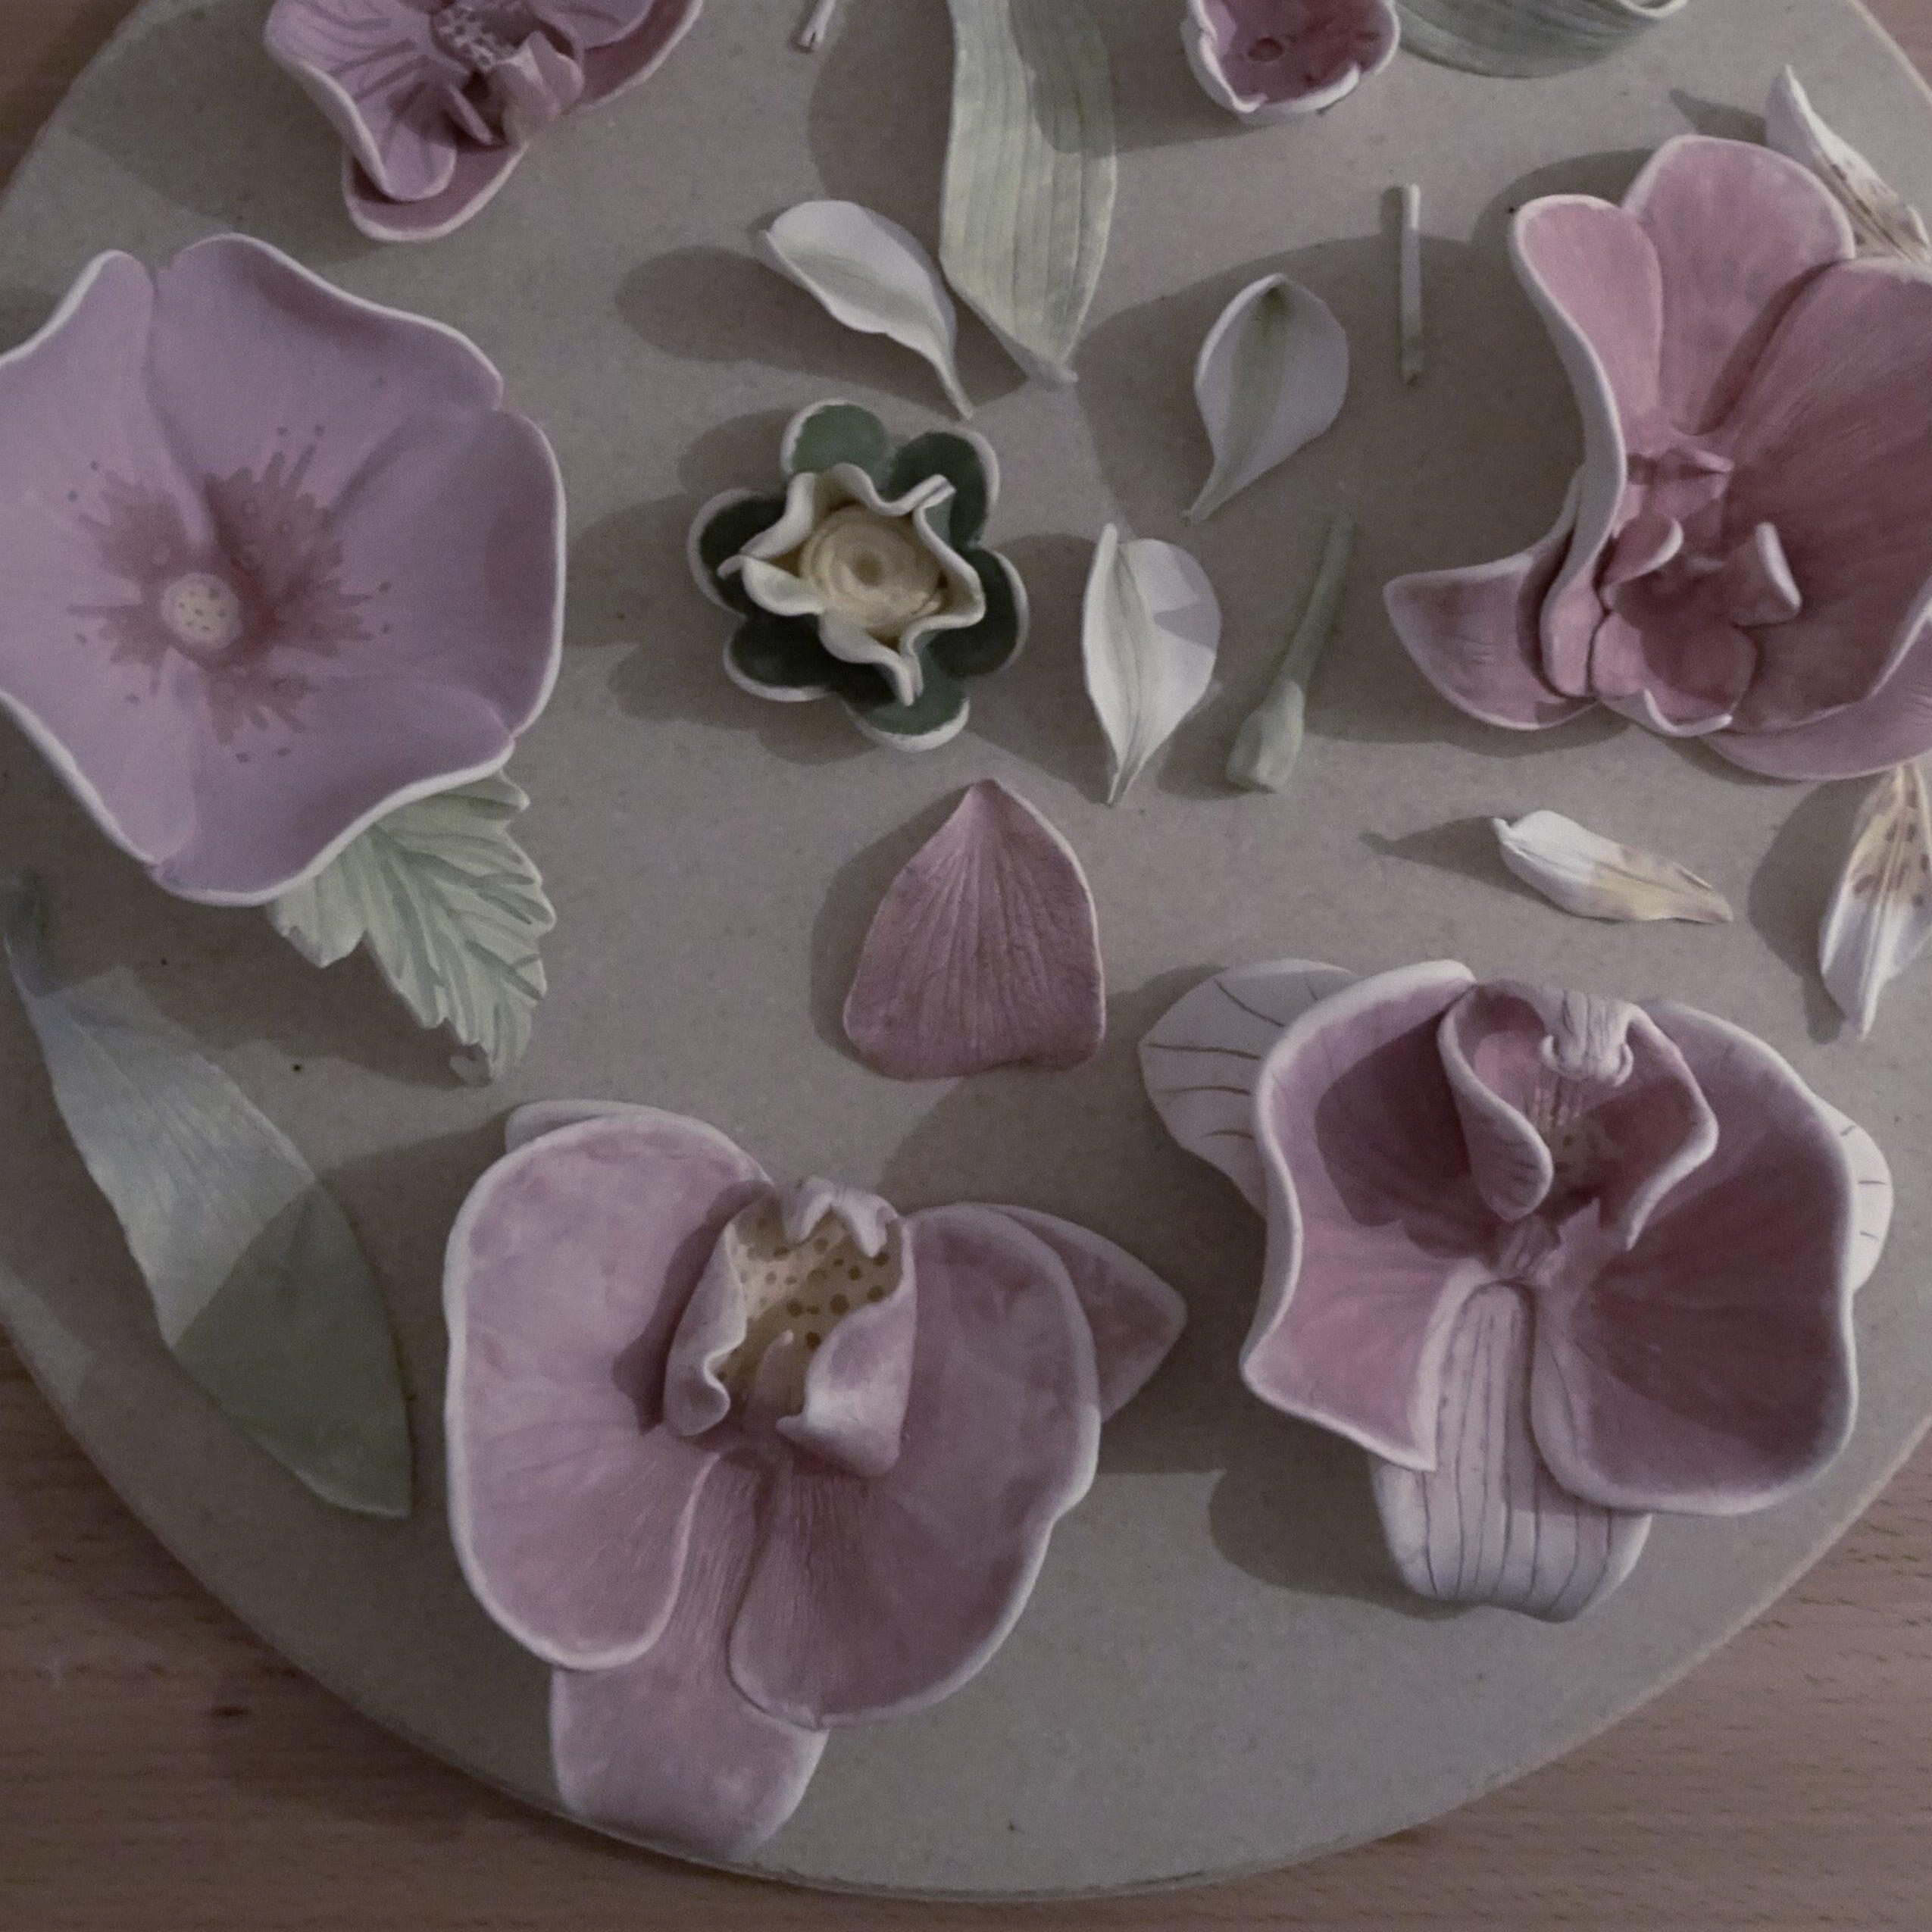 Aus der Porzellan Serie: Blüten und Blätter mit der Hand modelliert.